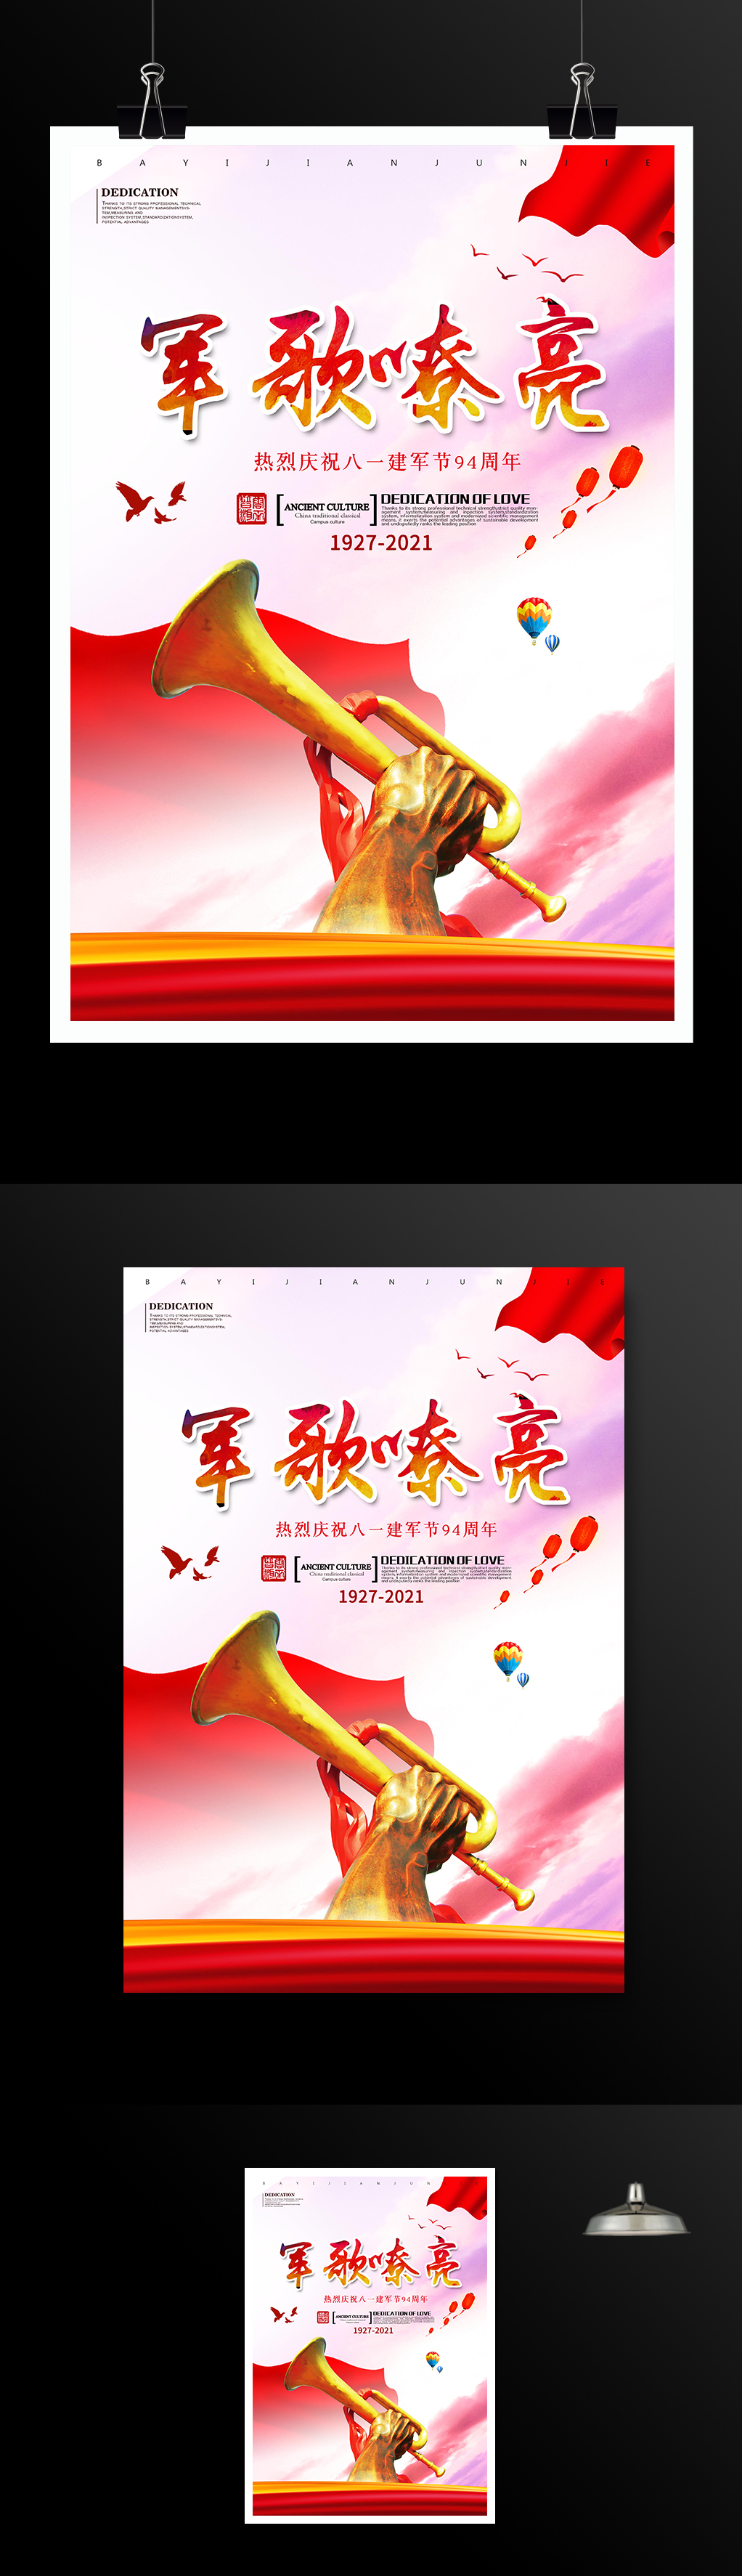 军歌嘹亮建军节94周年海报